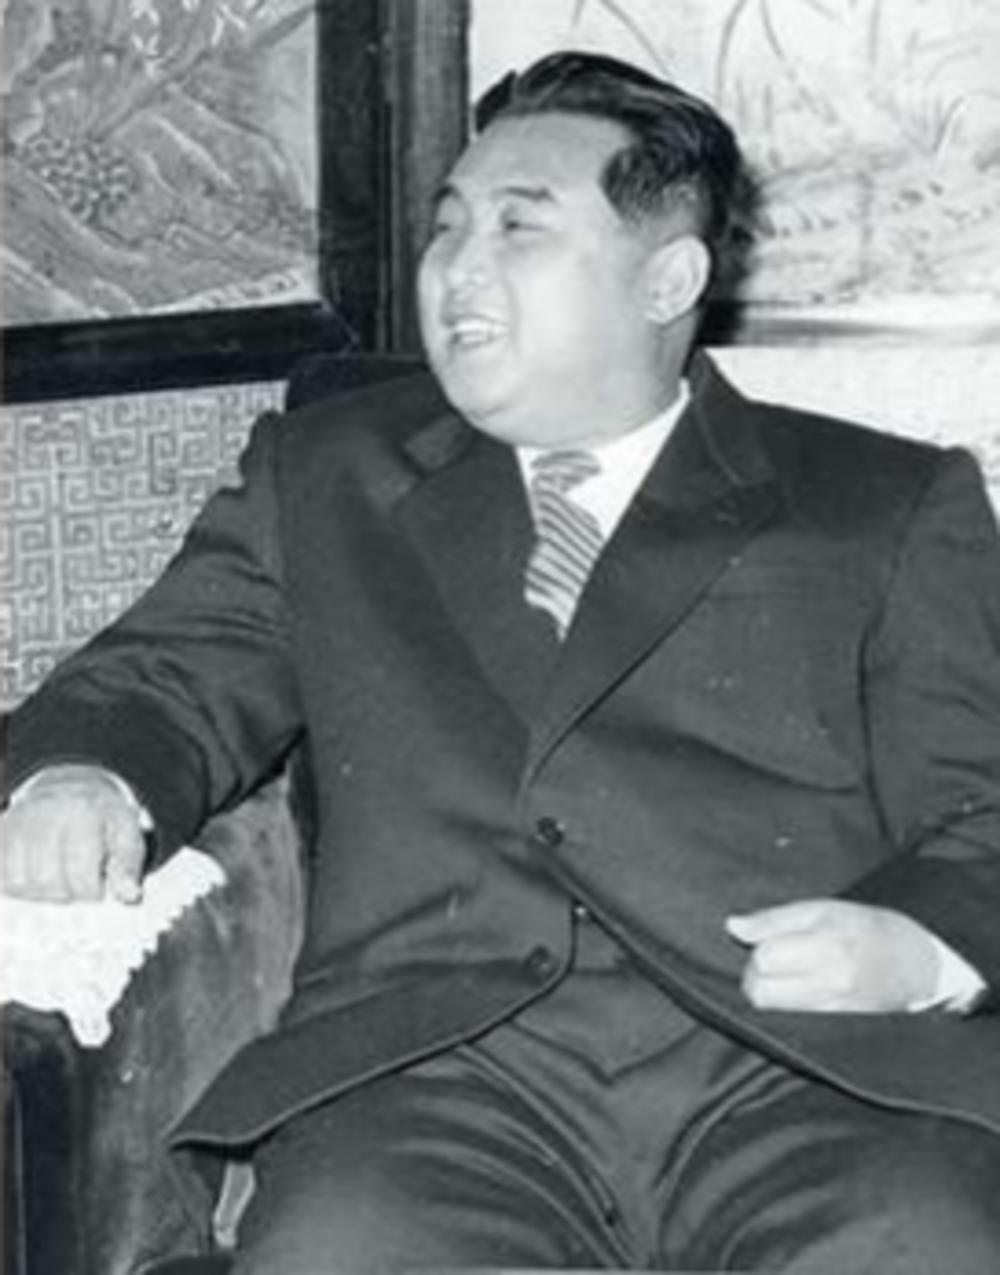 Kim Il-Sung is voorzitter van de Koreaanse Arbeiderspartij en sinds 1948 Noord-Koreaans regeringsleider; beraamt met Stalins hulp de aanval op Zuid-Korea.